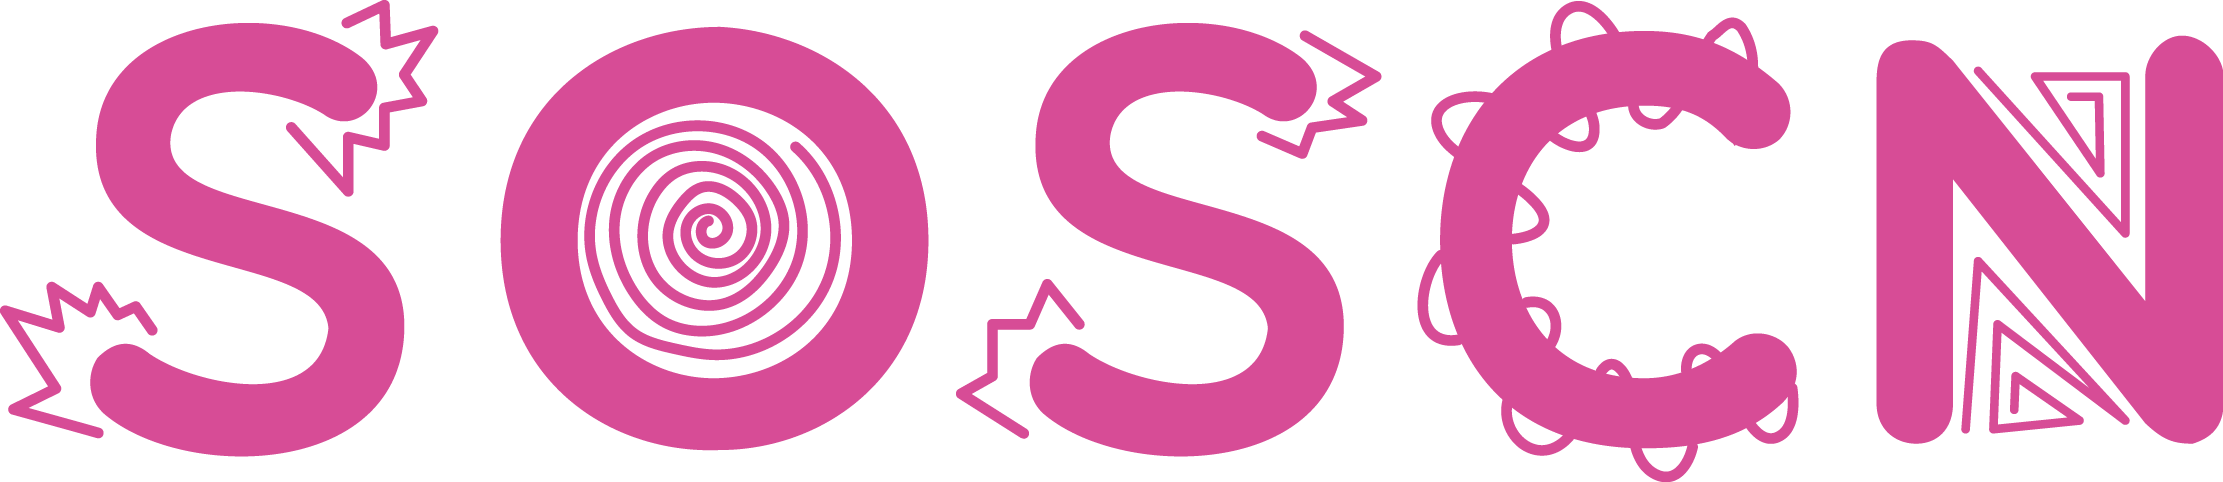 image for SOSCN_logo_pink